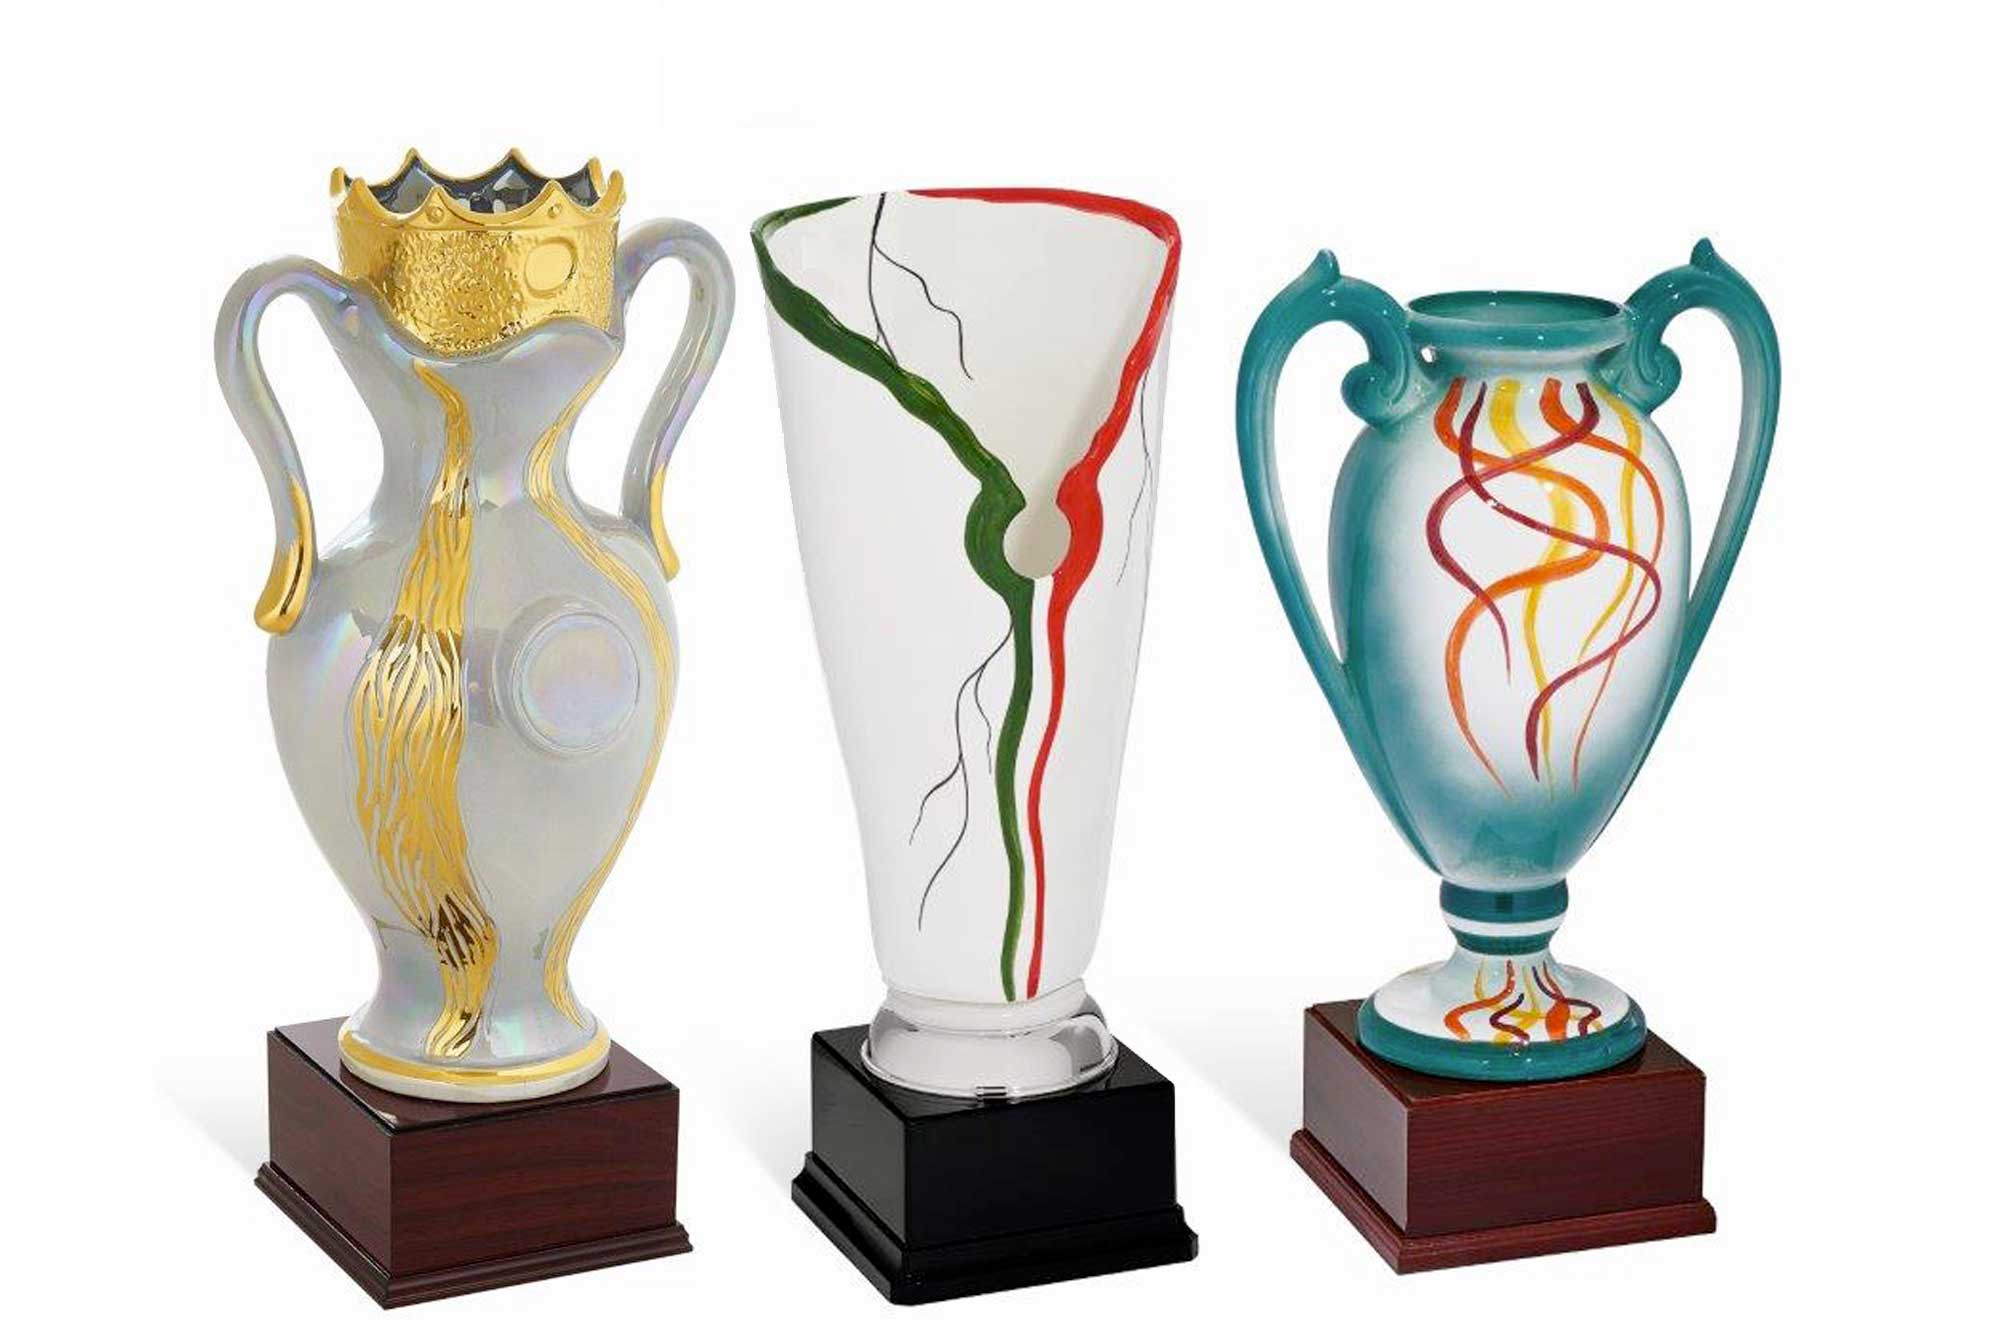 Le ceramiche e i cristalli personalizzate per ogni premiazione di PremioSport2